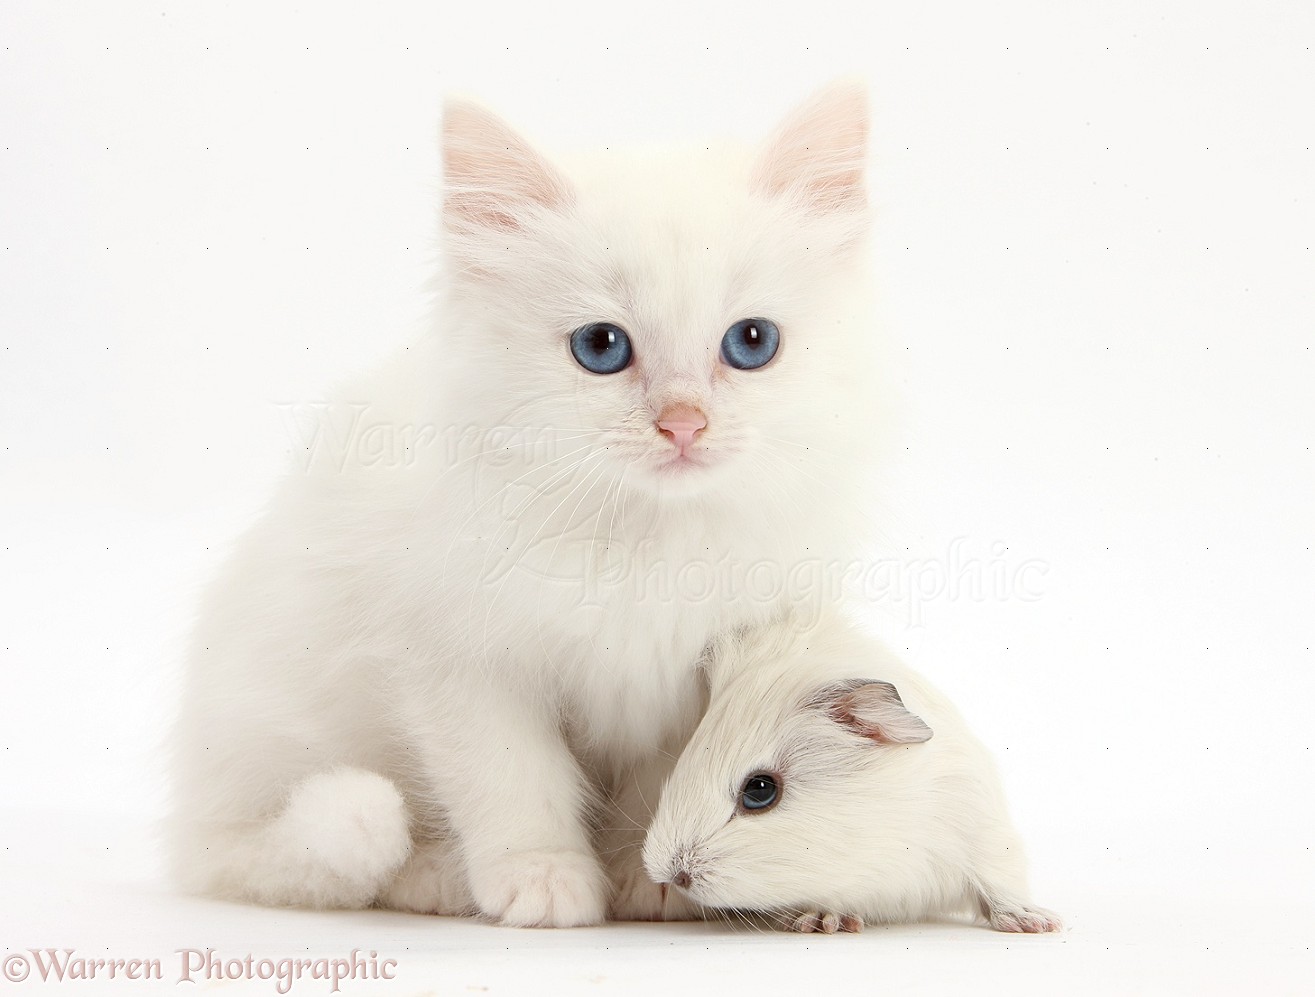 29027-Baby-white-Guinea-pig-and-white-kitten-white-background.jpg